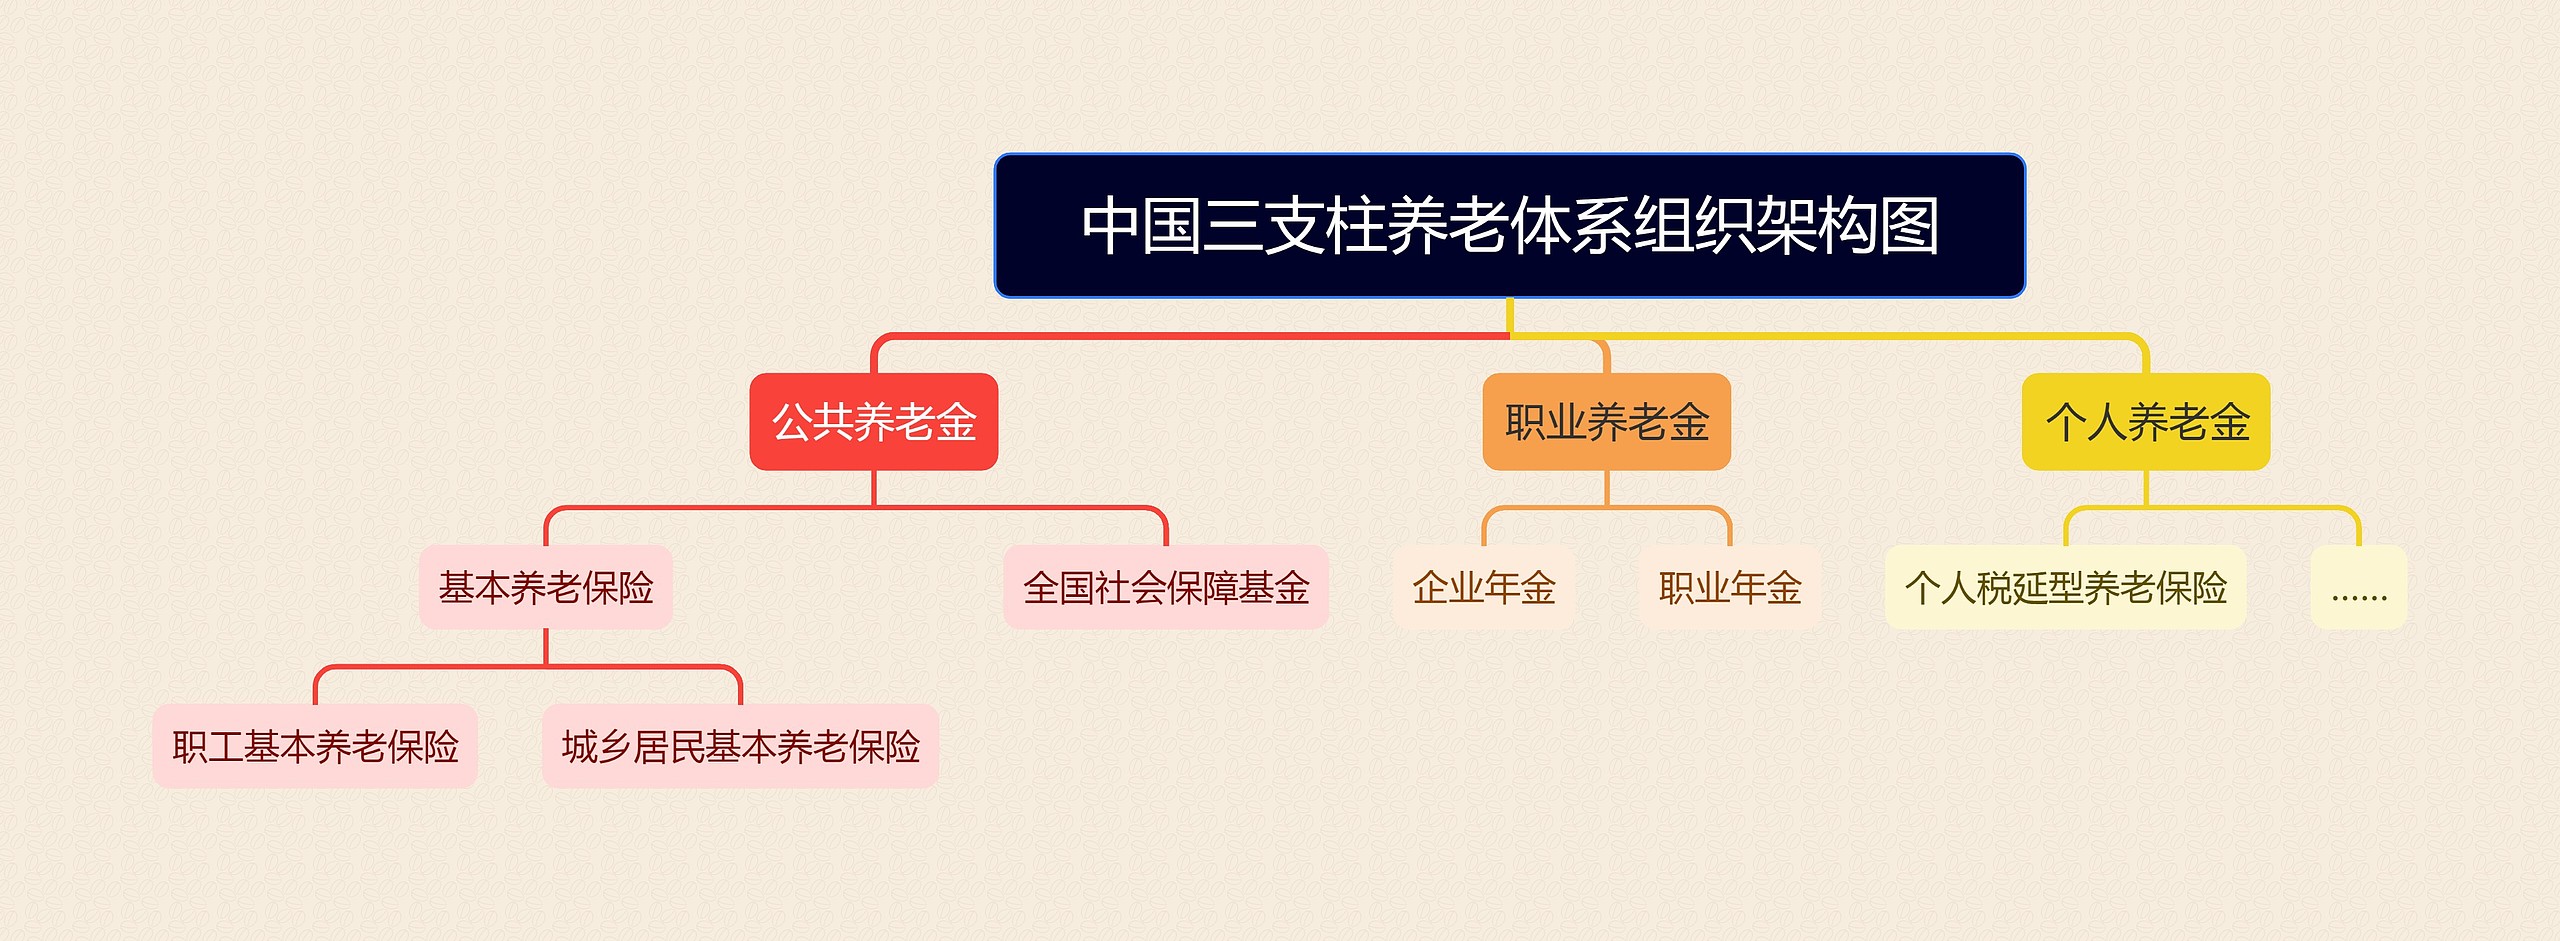 中国三支柱养老体系组织架构图